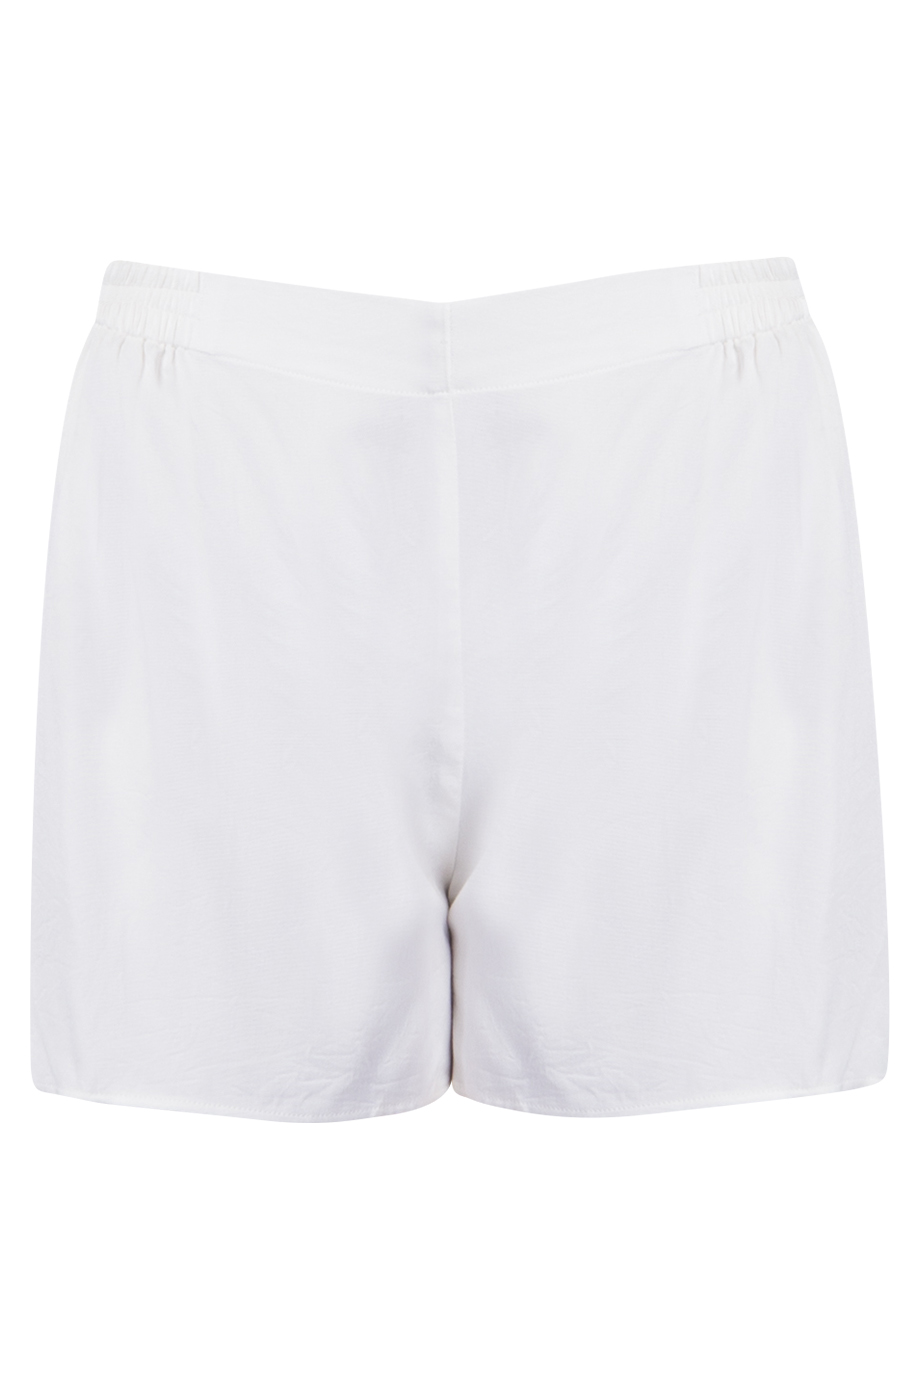 Quần ngủ Morning No.1 Pajama Shorts/ White